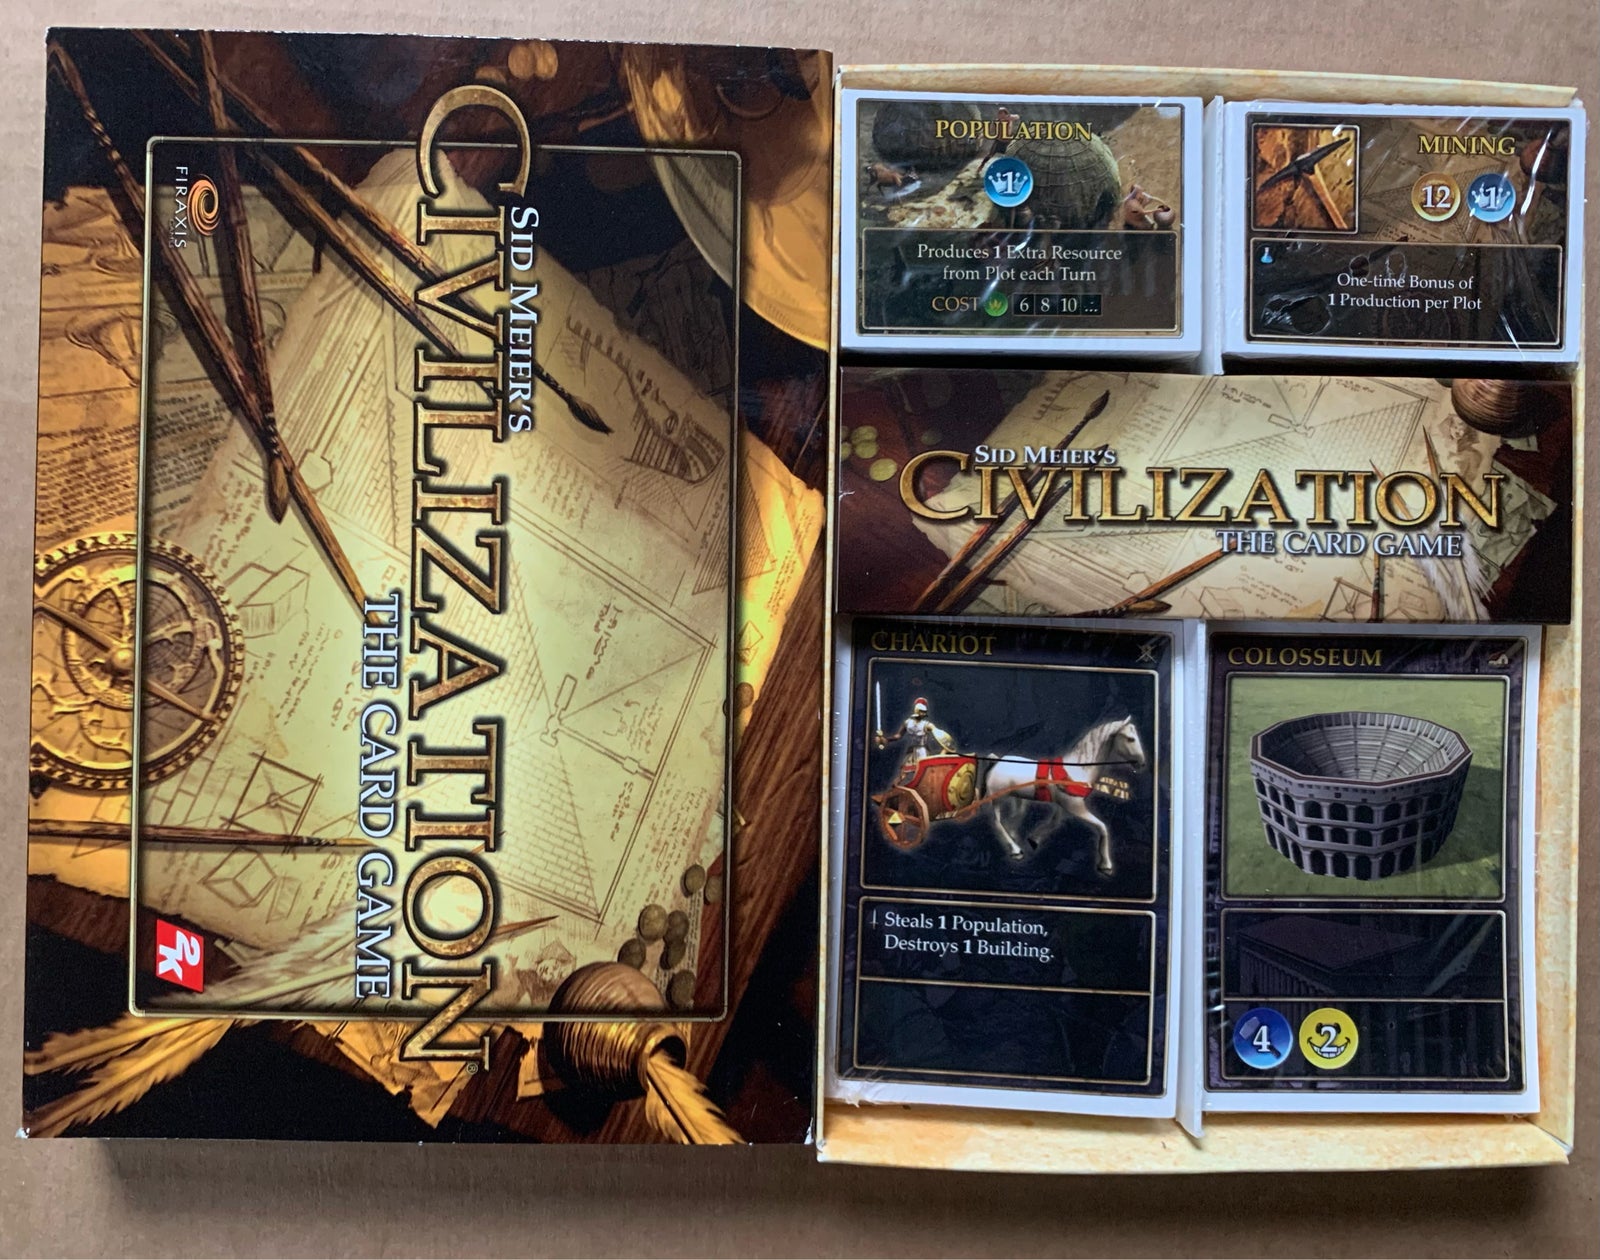 Sid Meier’s Civilization Chronicles, til pc, strategi